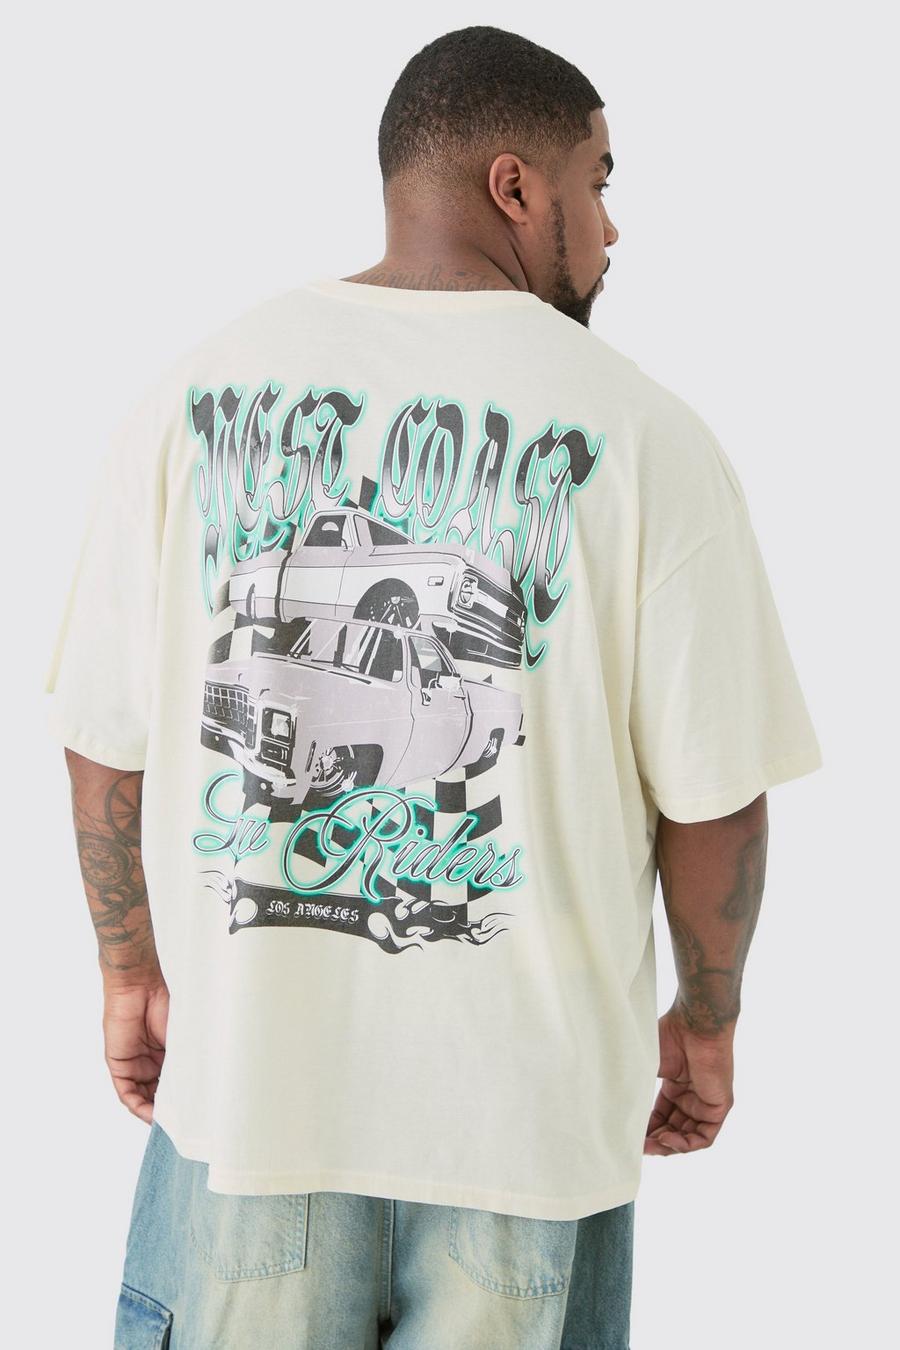 Plus West Coast Graphic Car T-shirt In Ecru